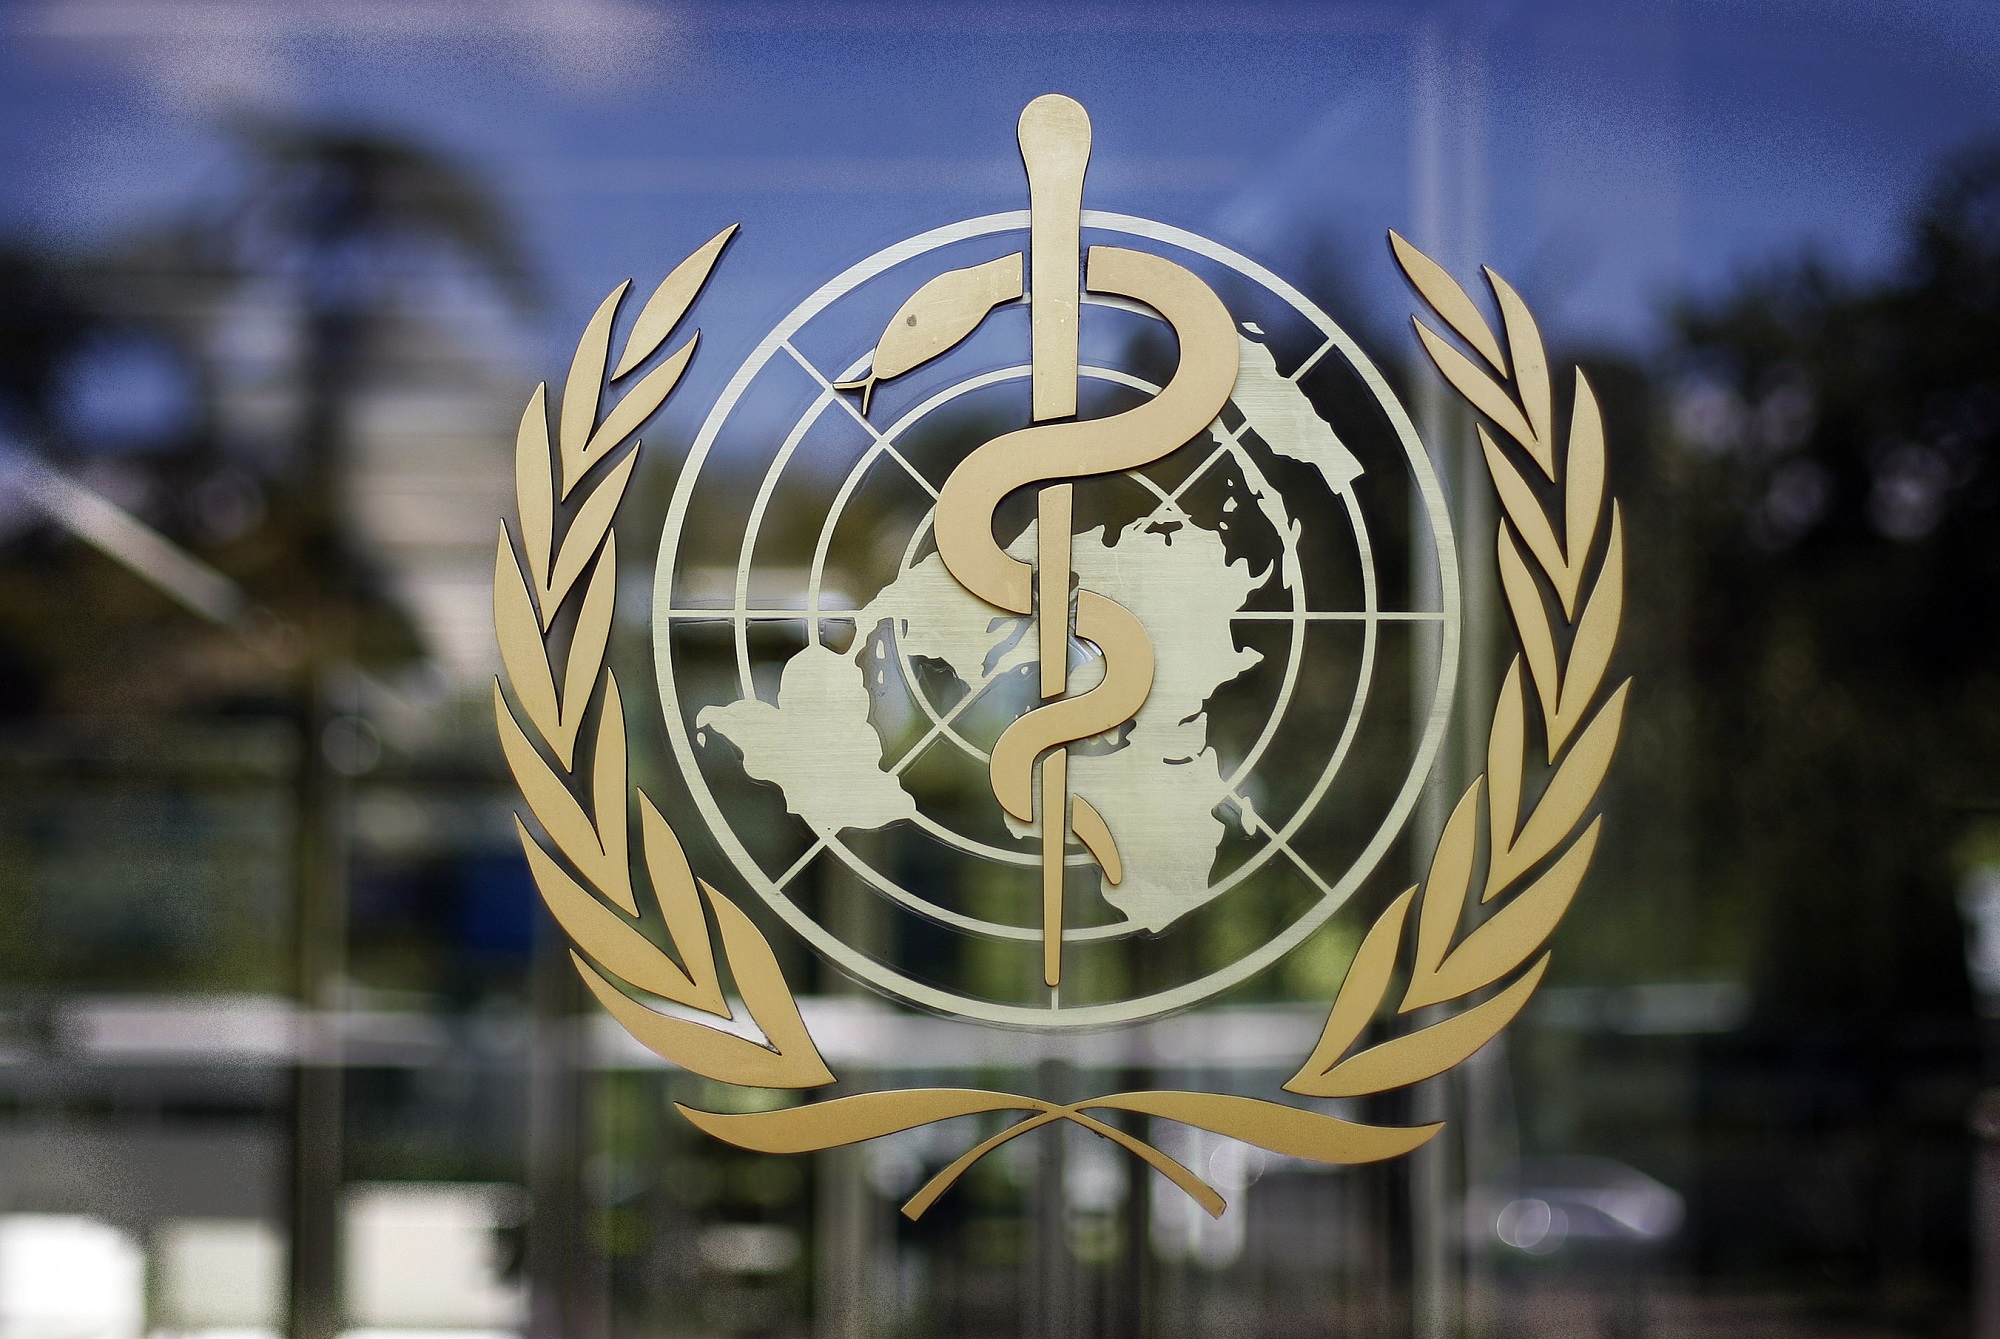 Προκαταρκτική συμφωνία των μελών του ΠΟΥ για μια μελλοντική συνθήκη για την πρόληψη πανδημιών